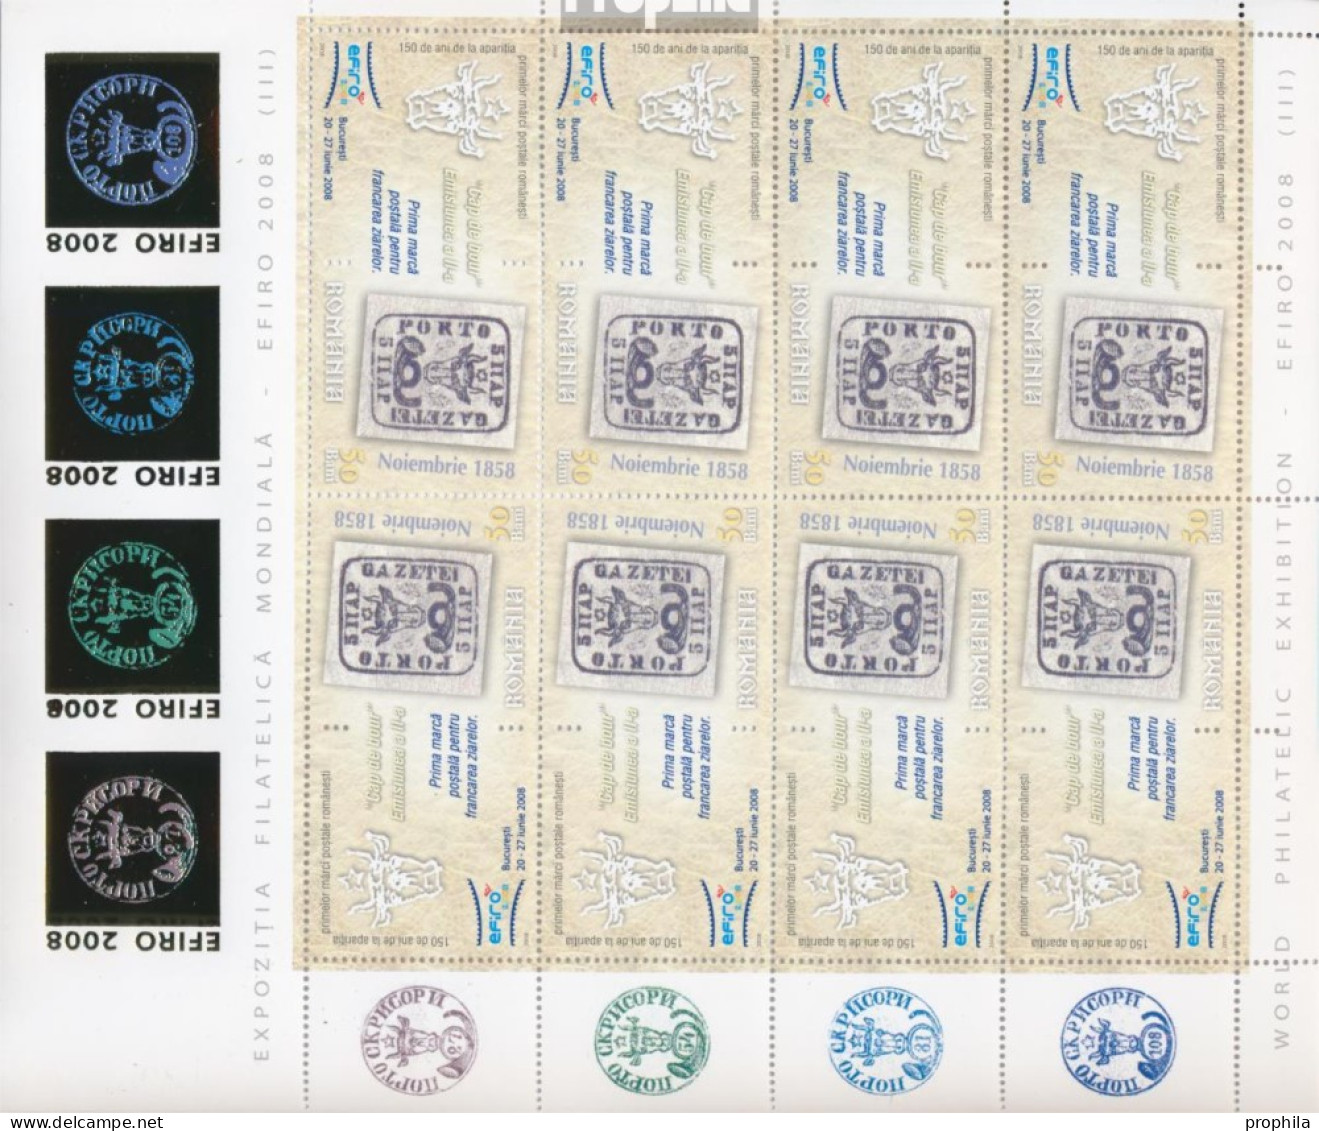 Rumänien 6299x Klb II-6304x Klb II Kleinbogen (kompl.Ausg.) Postfrisch 2008 BriefmarkenausstellungEFIRO 08 - Unused Stamps